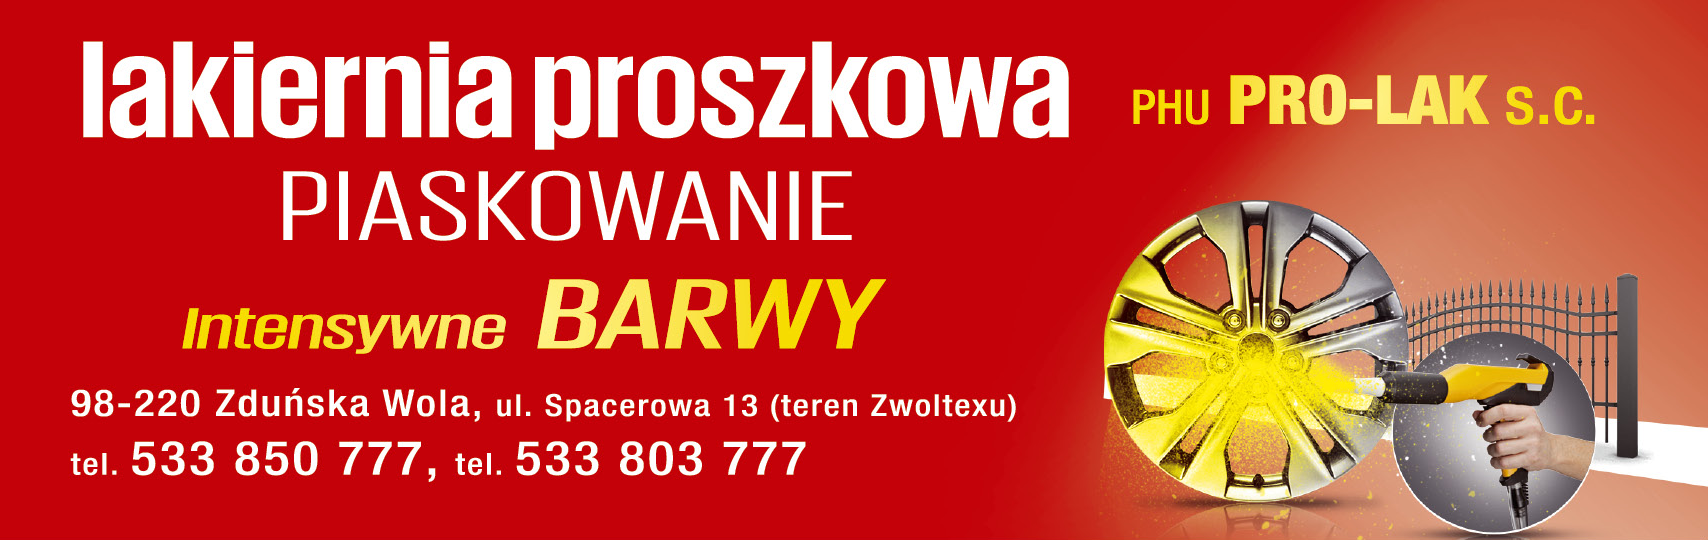 P.H.U. "PRO-LAK" s.c. Zduńska Wola Lakiernia Proszkowa / Piaskowanie / Intensywne Barwy